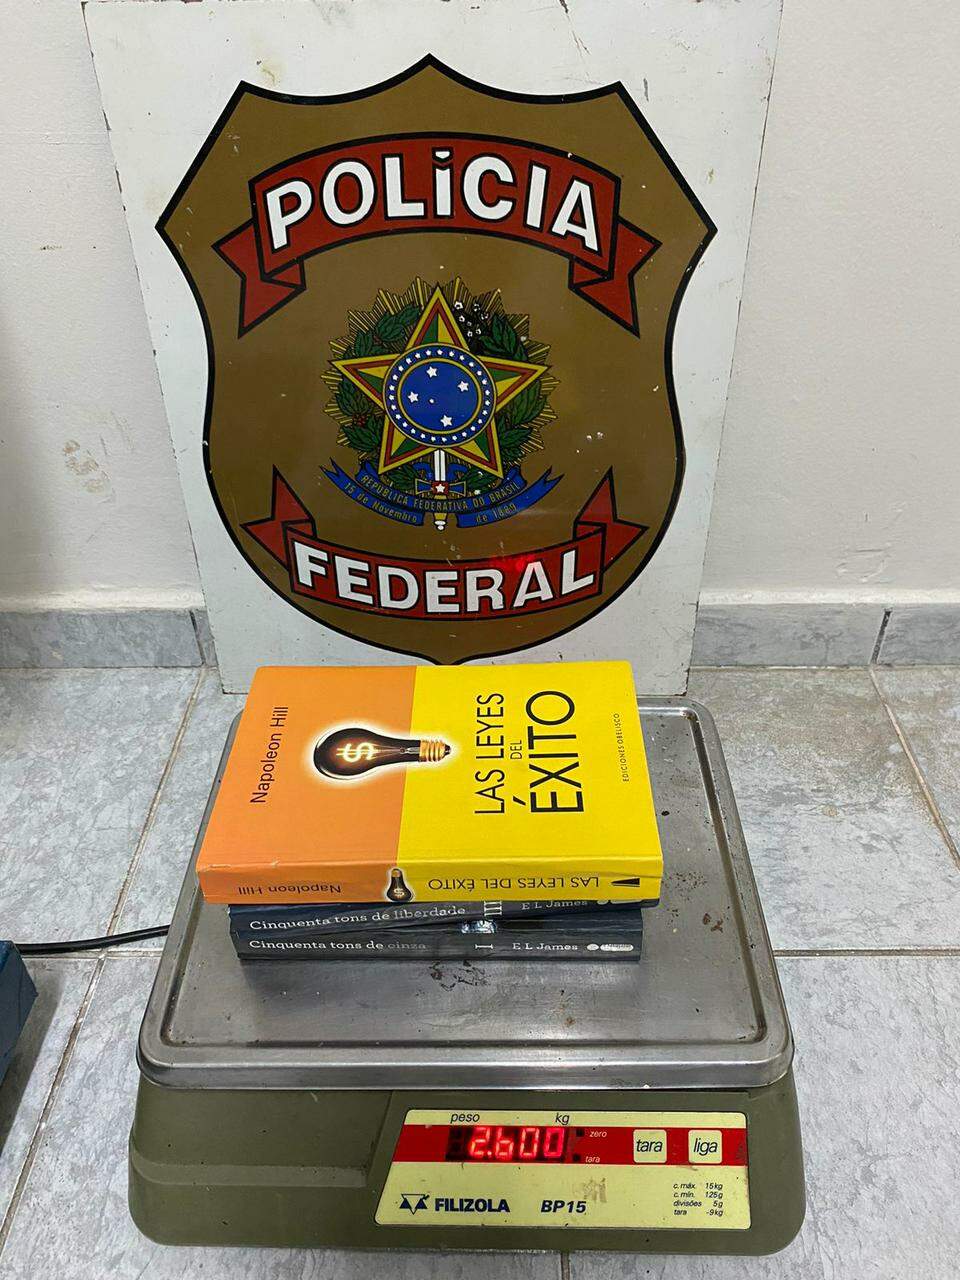 Traficante é preso com cocaína “disfarçada” em livros, rumo à Austrália